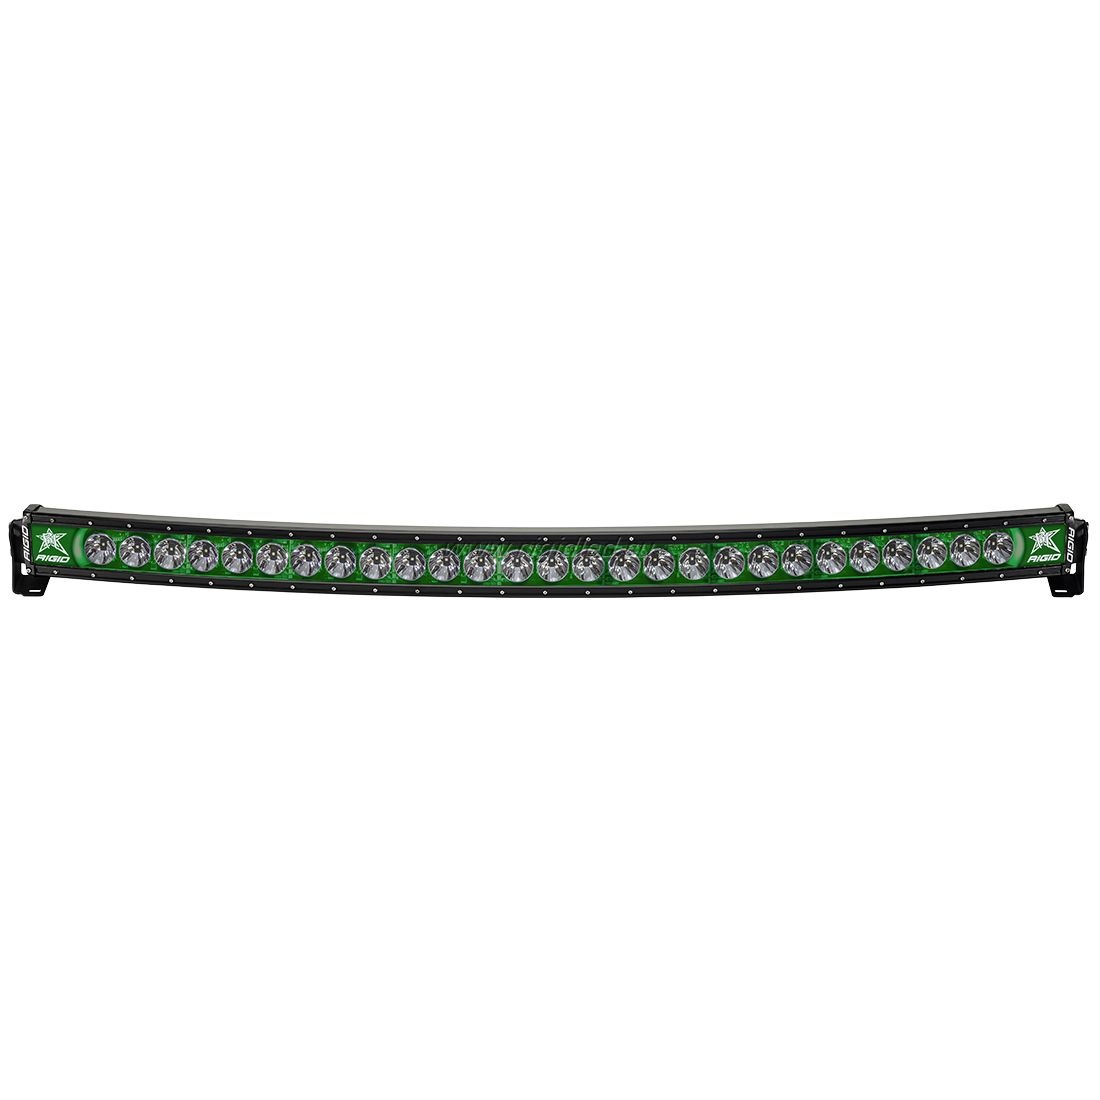 Фары RIGID 54" Radiance Curved серия - Зелёная подсветка 